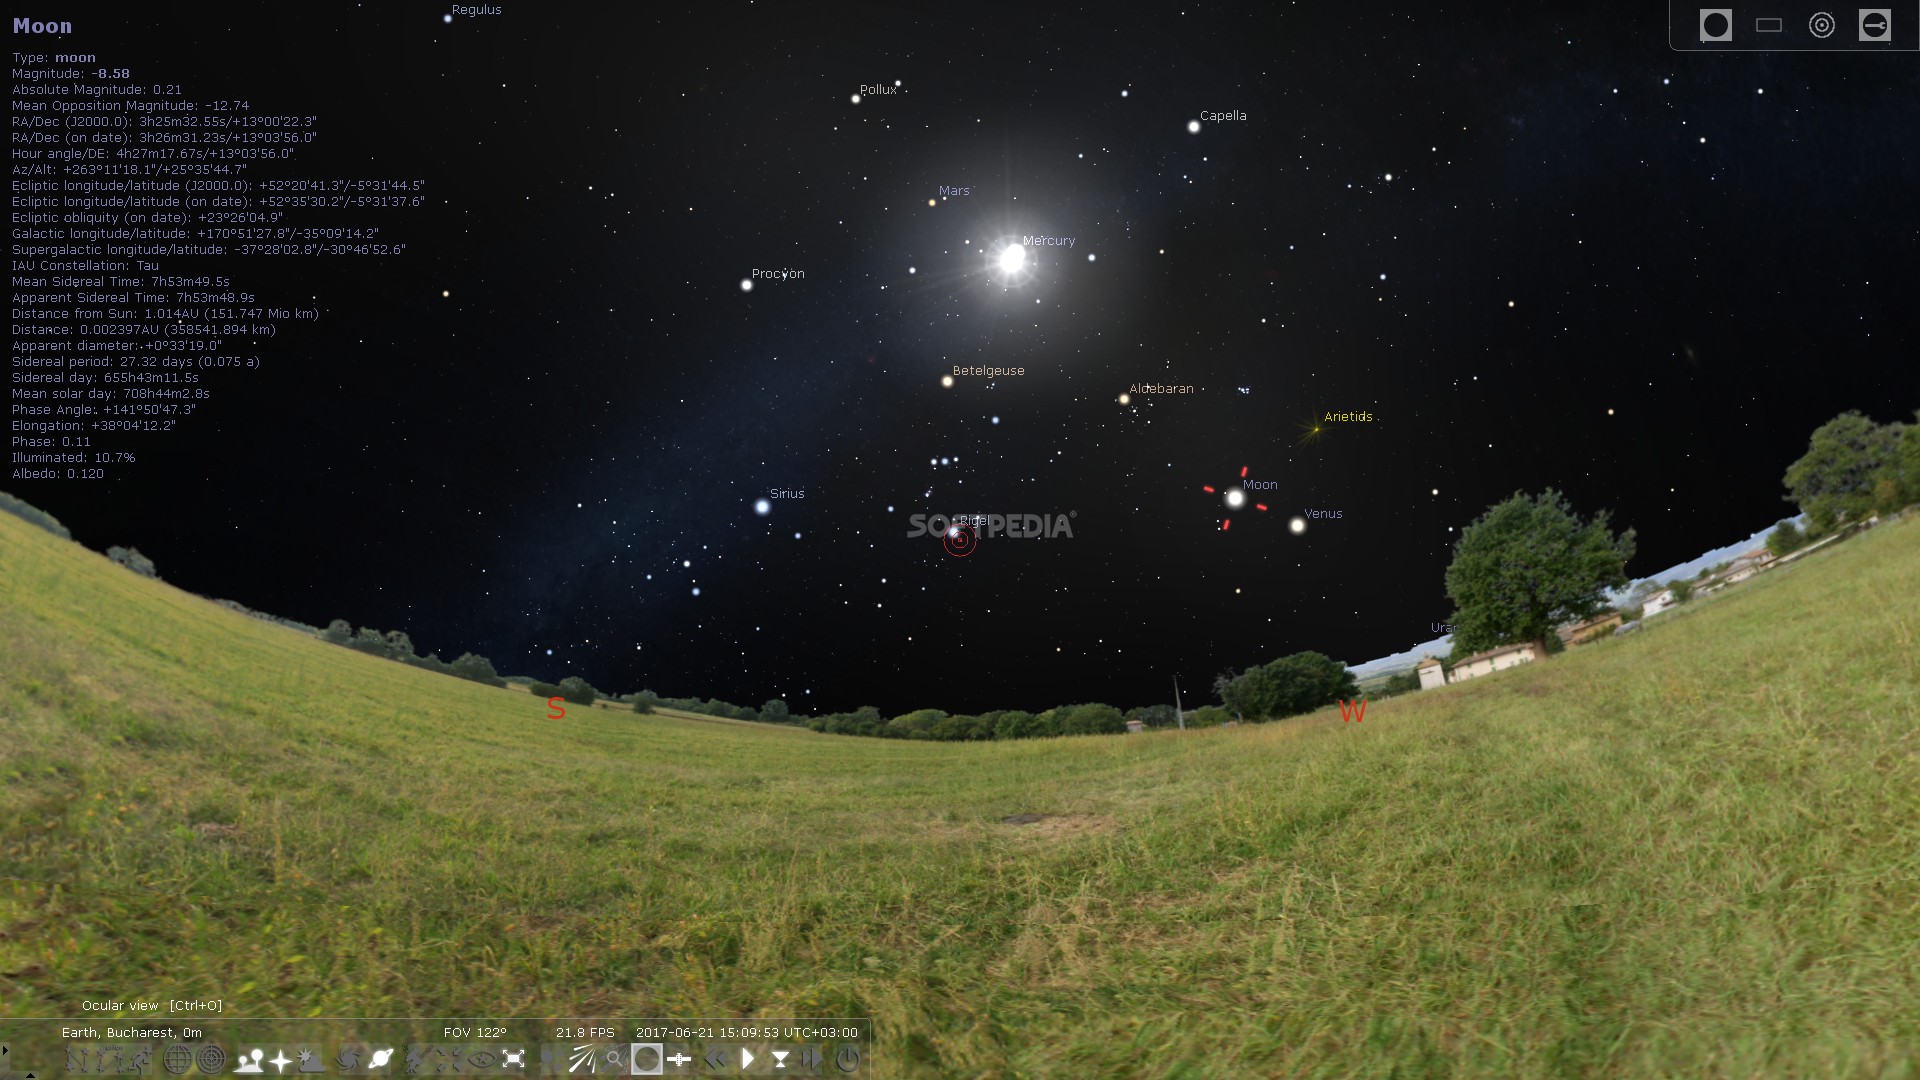 Free Planetarium App Stellarium 0.13.1 Released [Ubuntu 